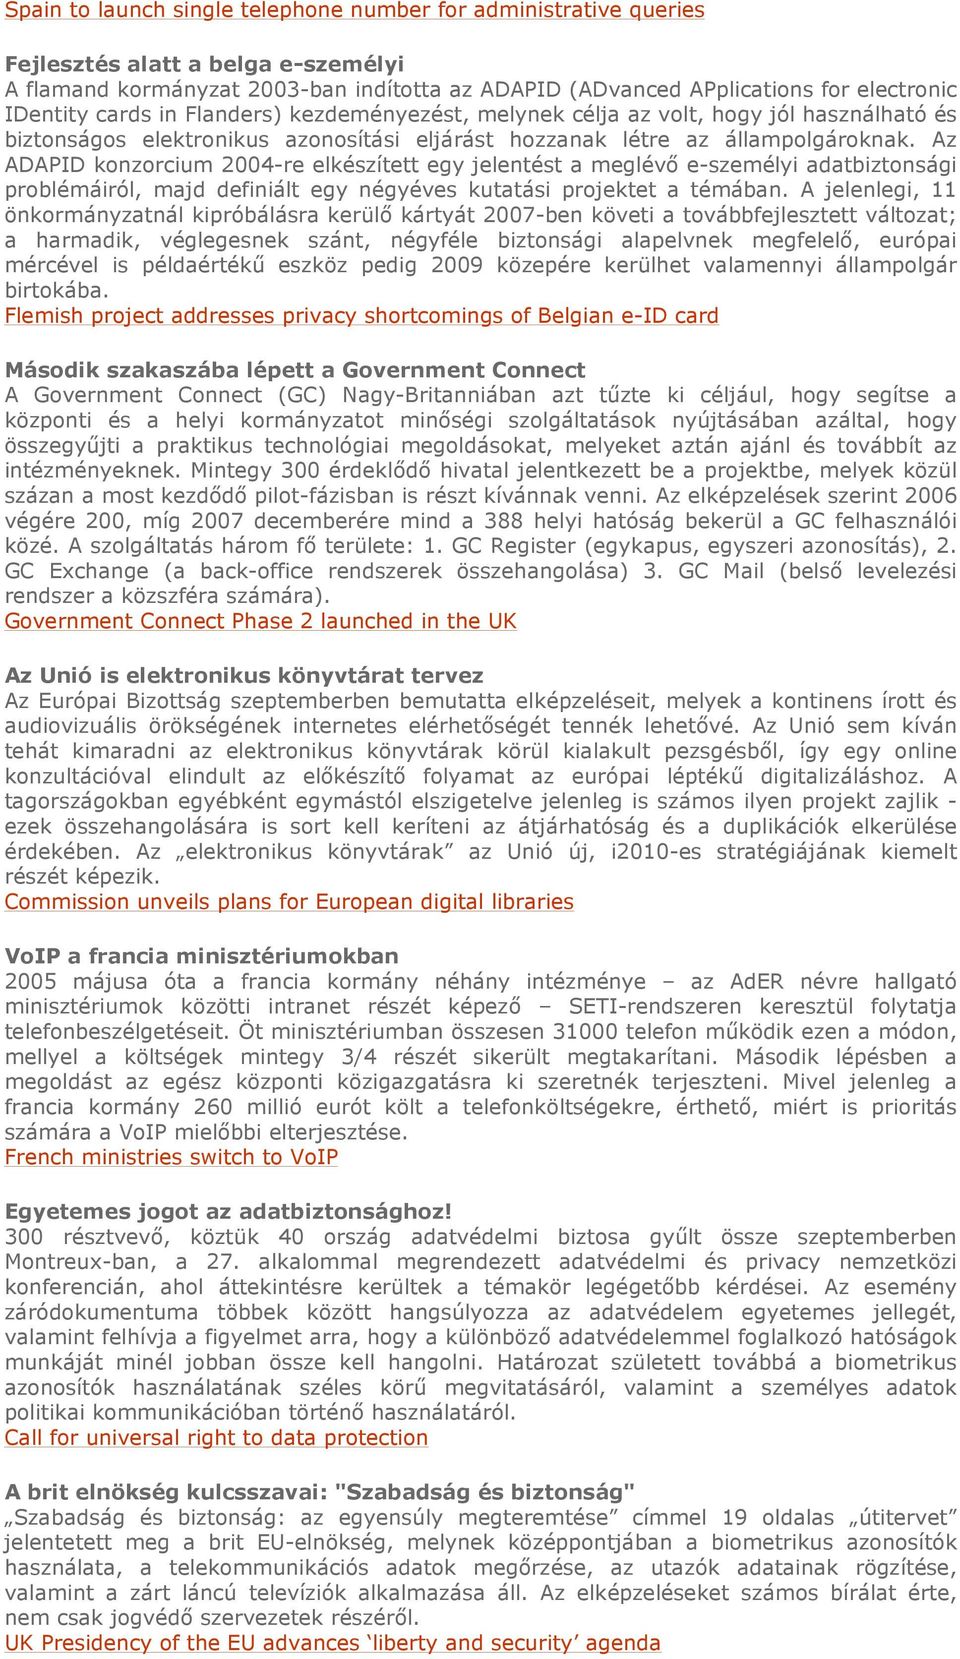 Az ADAPID konzorcium 2004-re elkészített egy jelentést a meglévı e-személyi adatbiztonsági problémáiról, majd definiált egy négyéves kutatási projektet a témában.